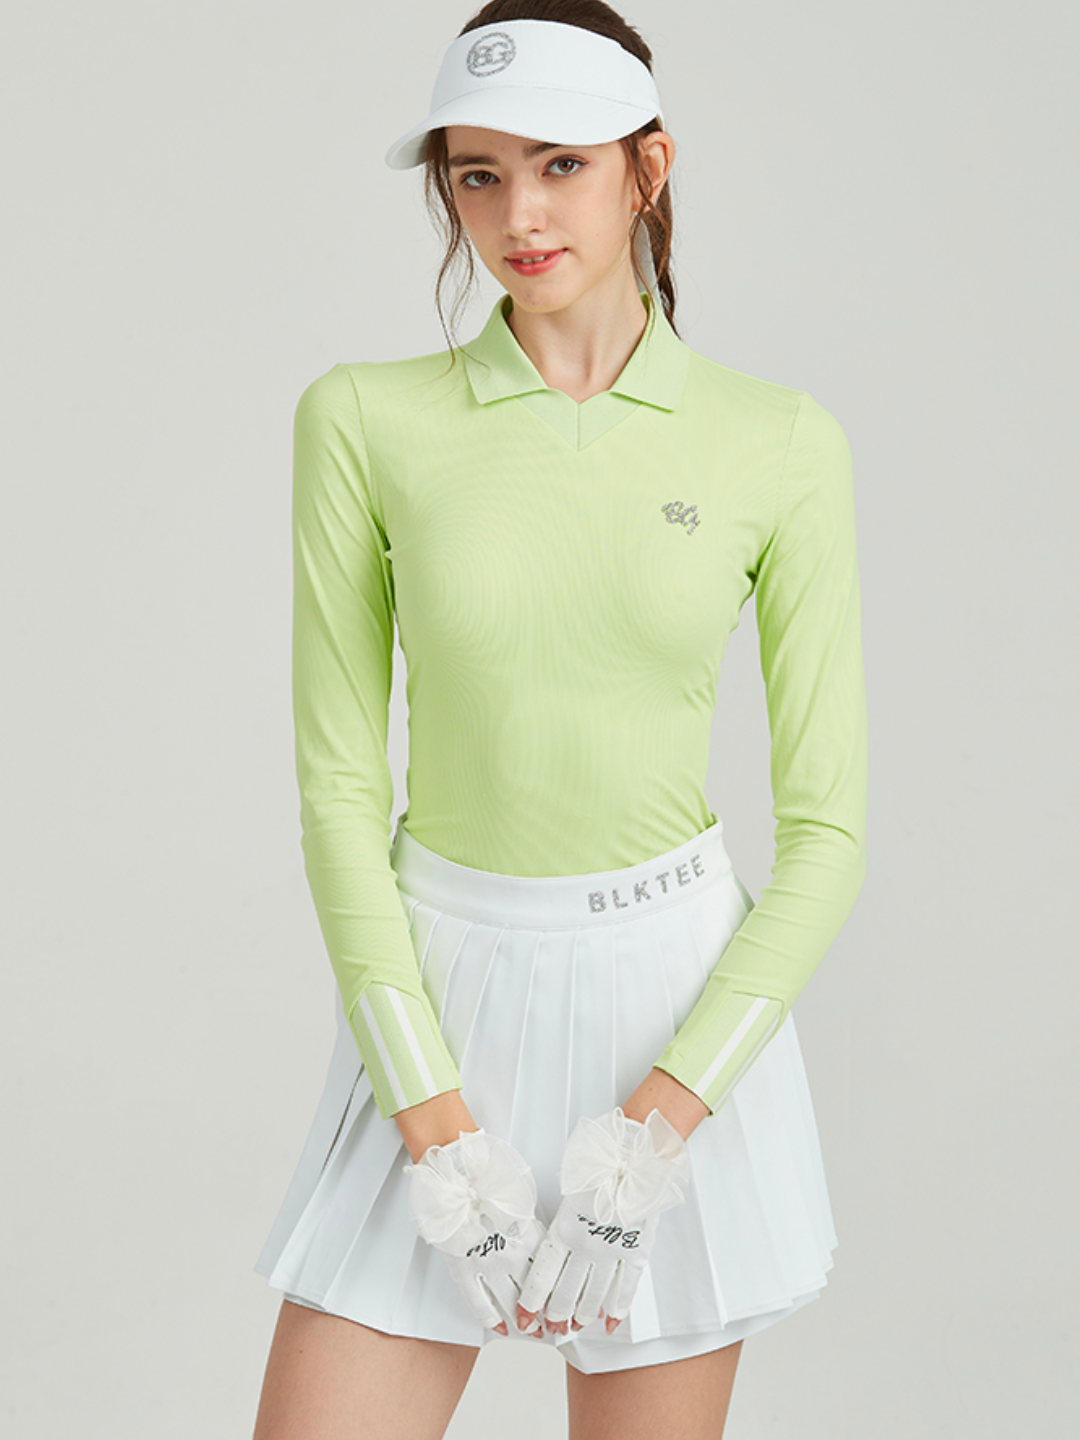 Pakaian golf ketat kelas atas ch011